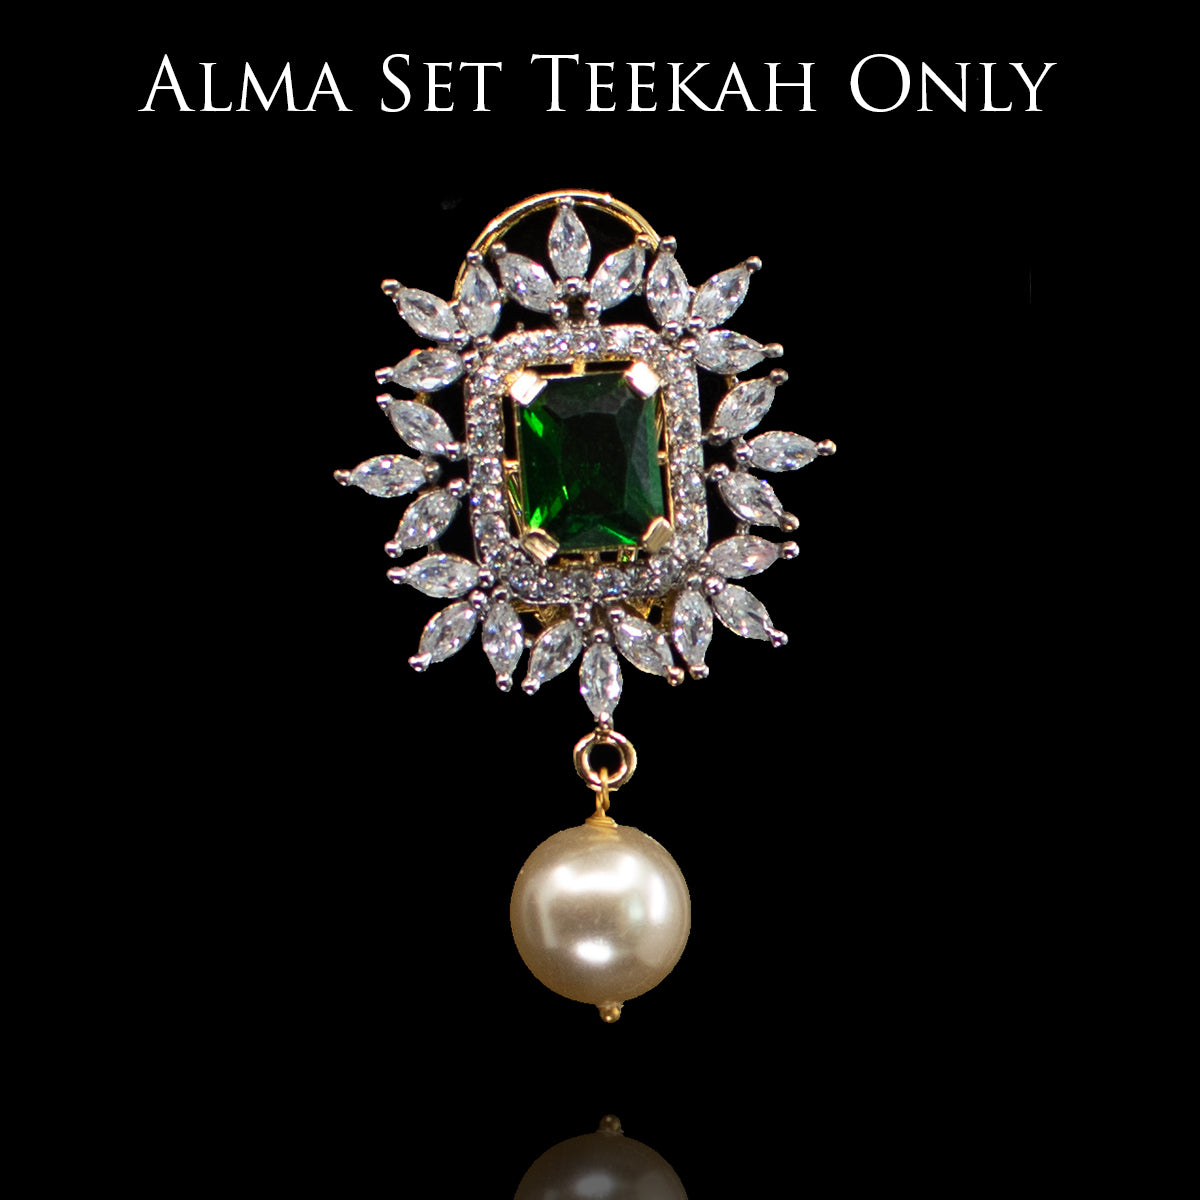 Custom Order - Alma Teekah